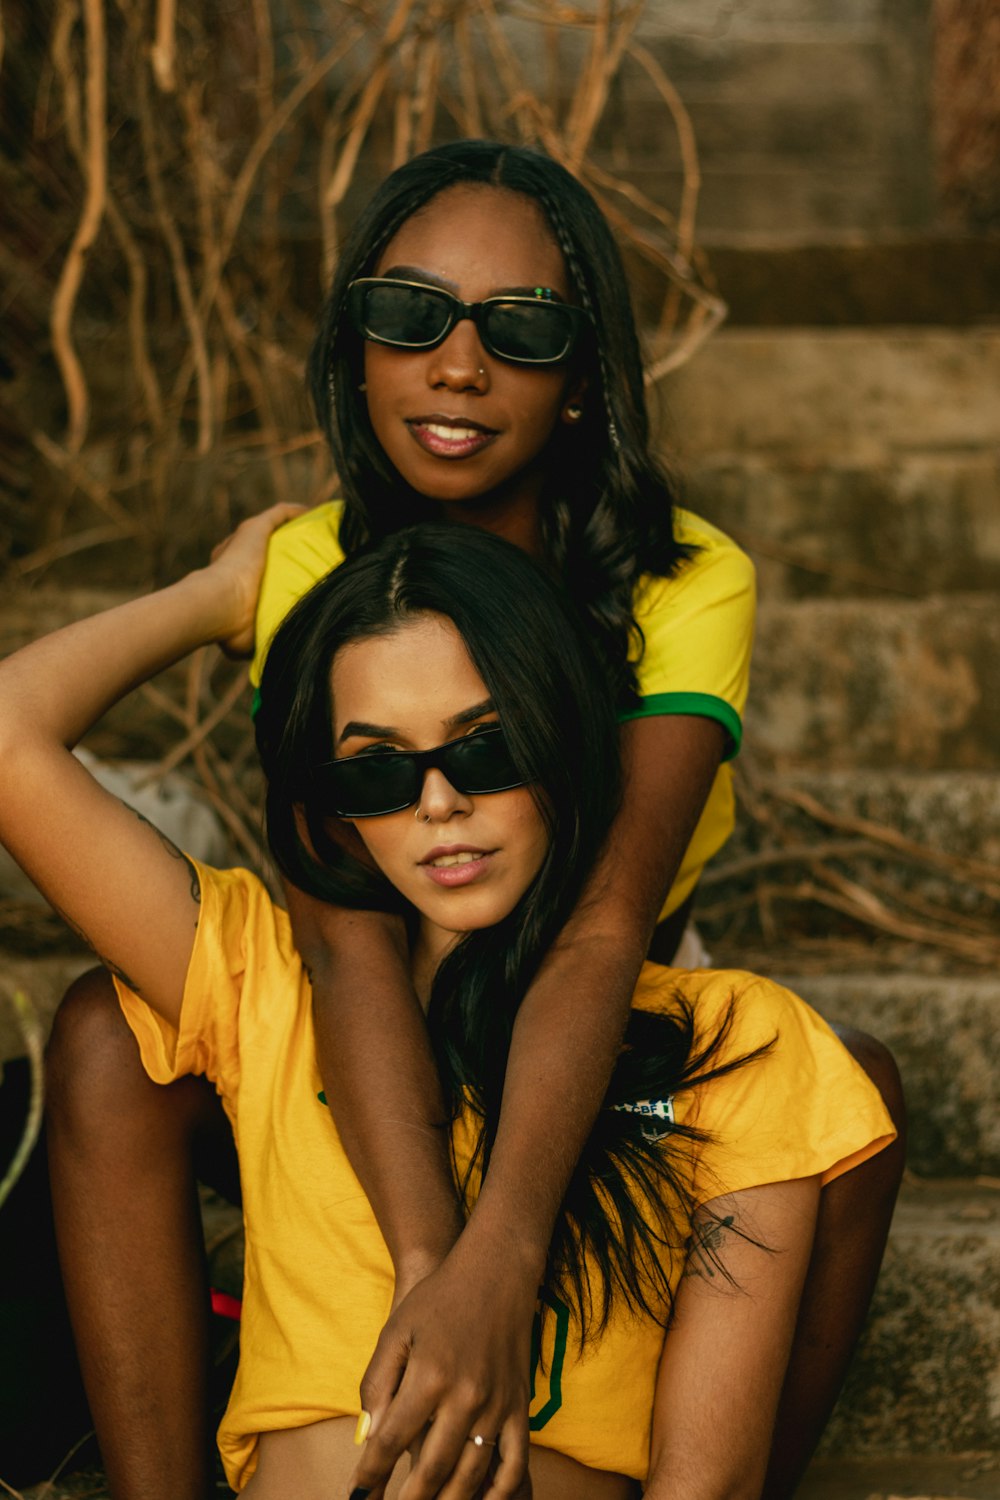 two women wearing sunglasses